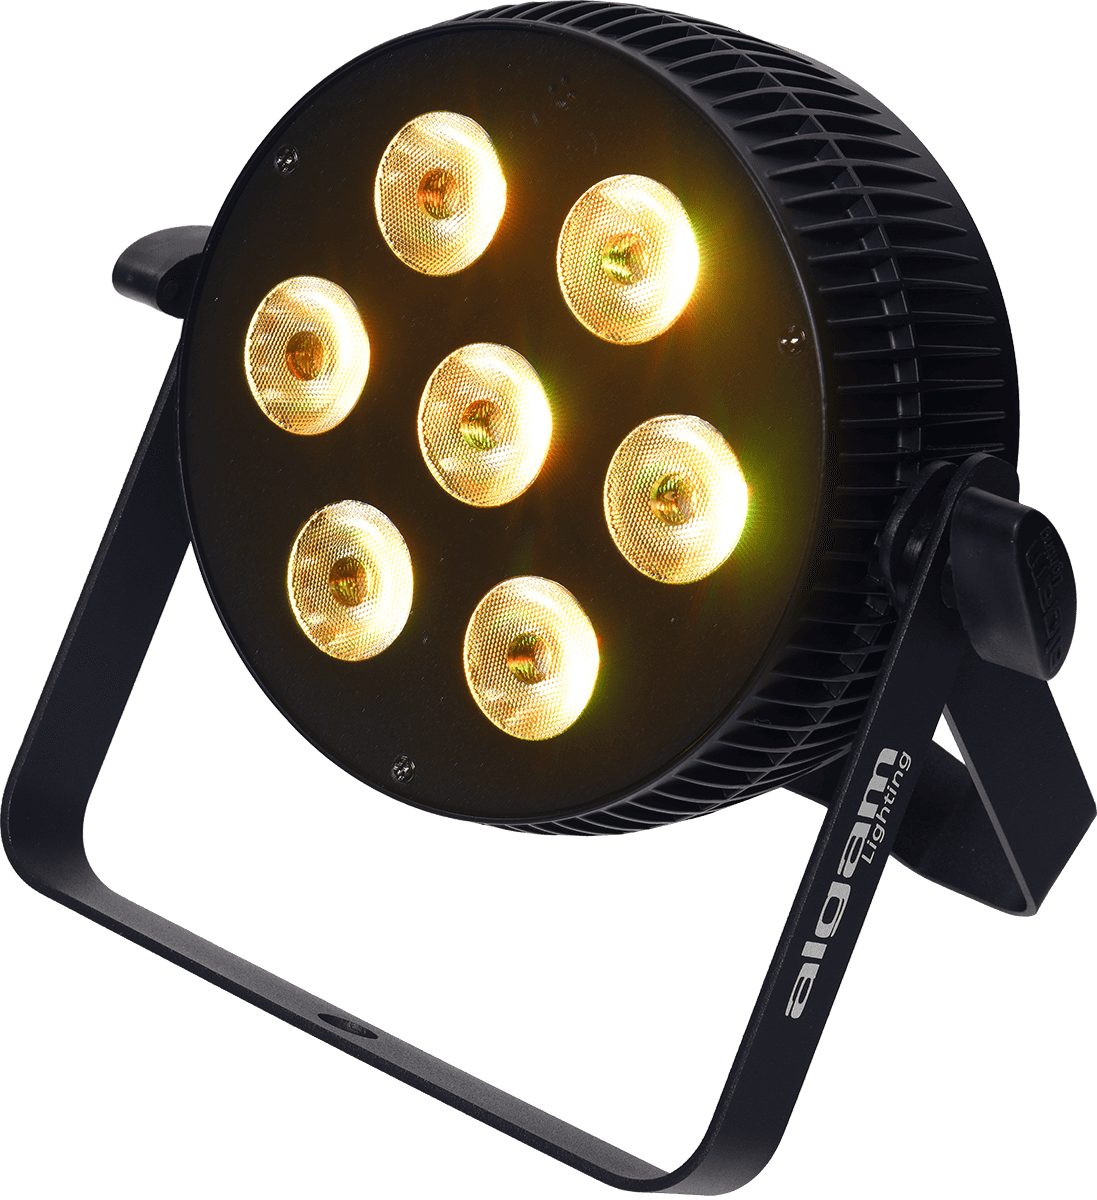 Algam Lighting Slimpar-710-hex - Projecteurs À Leds - Variation 1